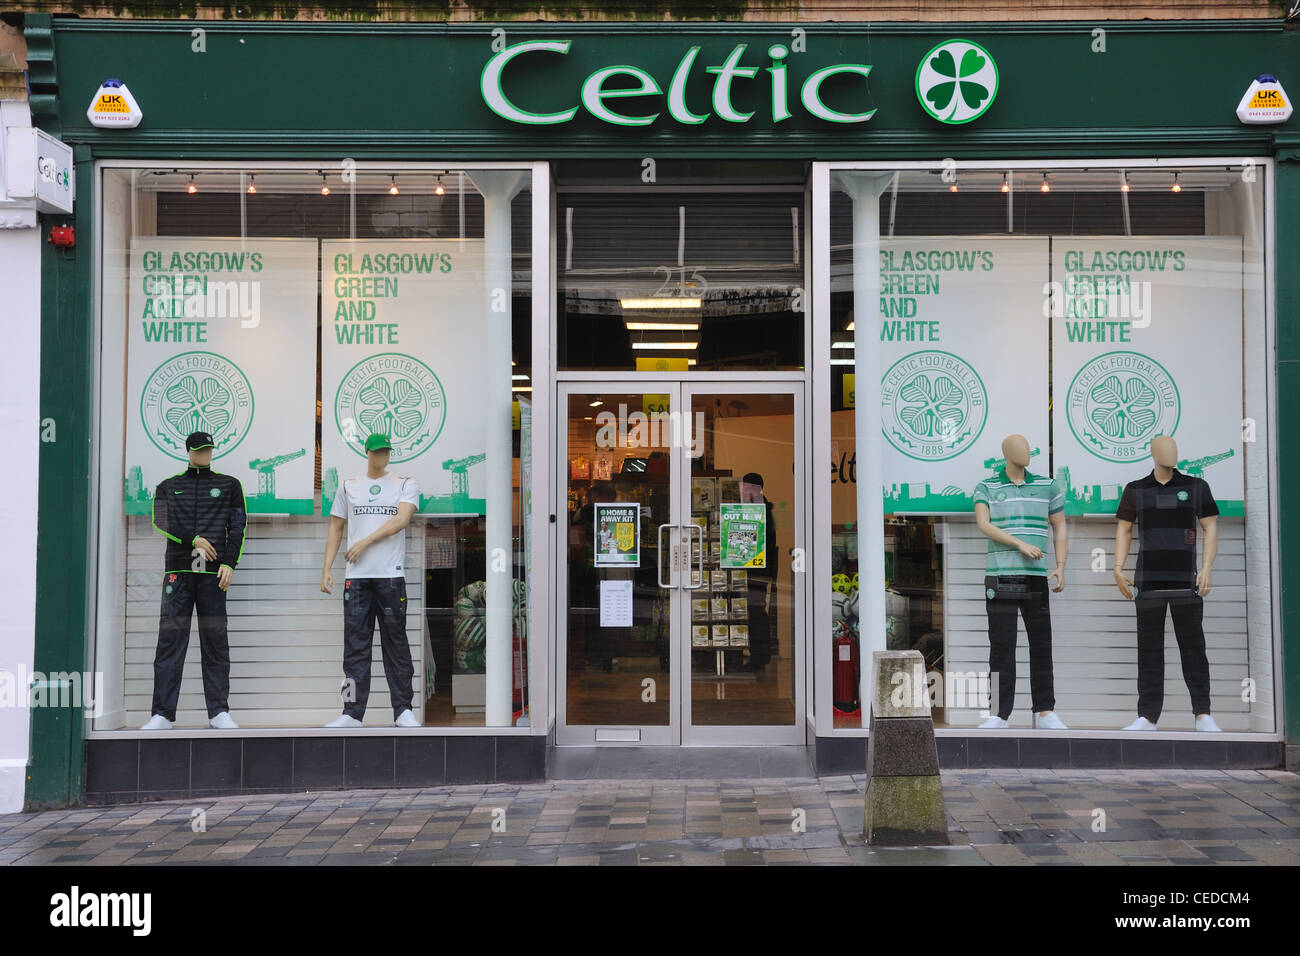 Le Celtic Football Club 1888 nouvelle boutique dans le centre-ville de Glasgow, Écosse, Royaume-Uni Banque D'Images